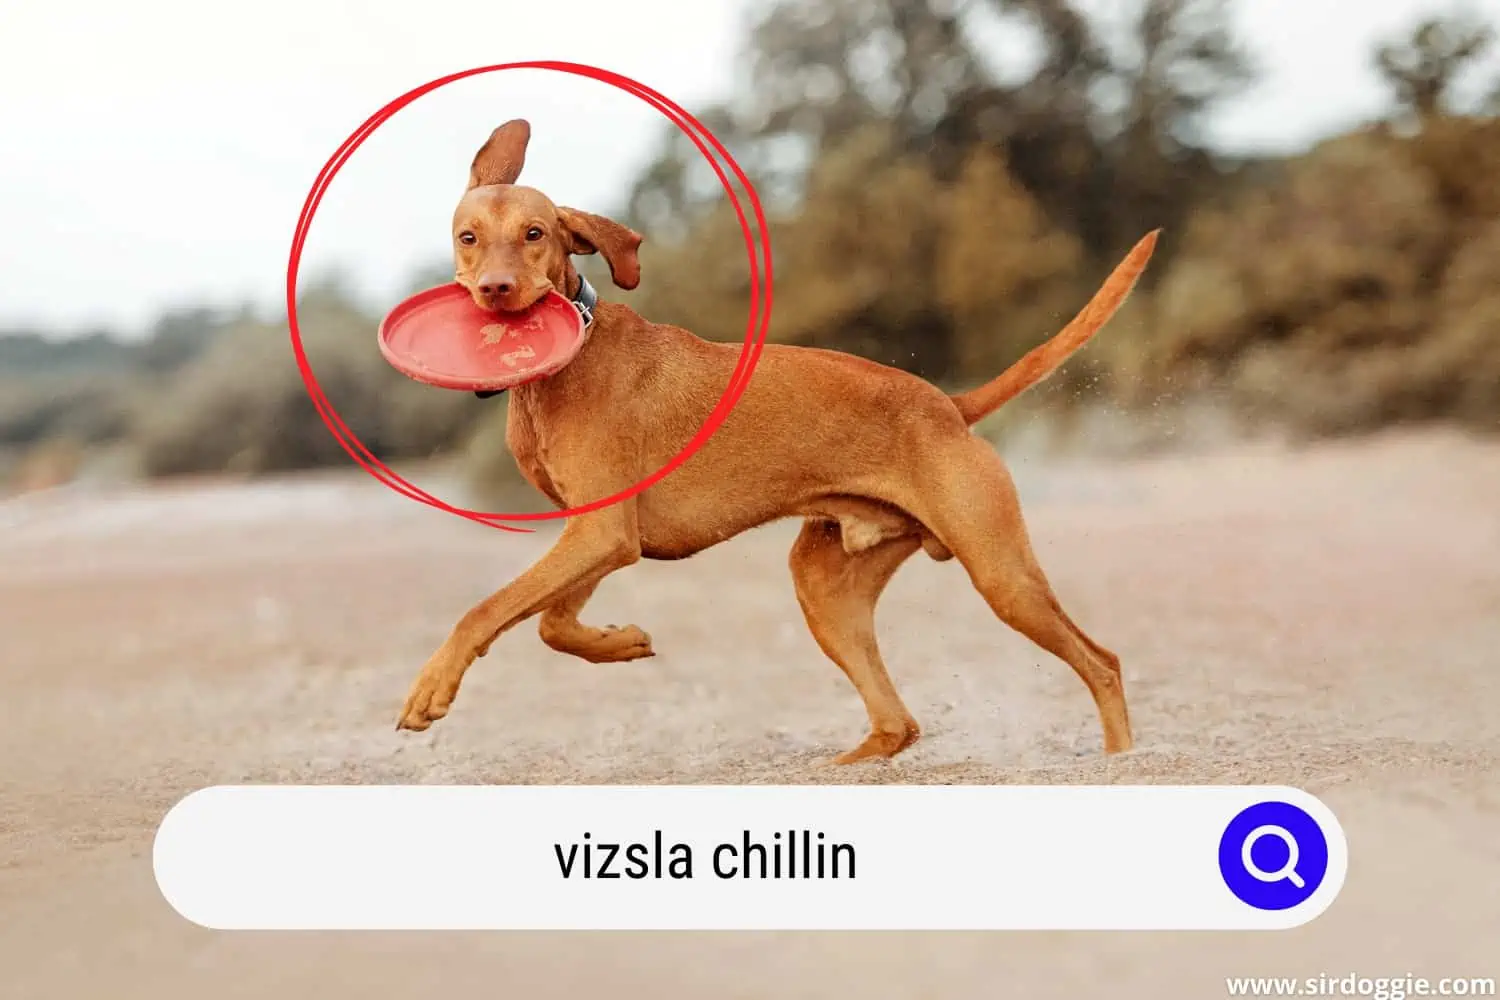 Vizsla dog chillin outside, playing fetch